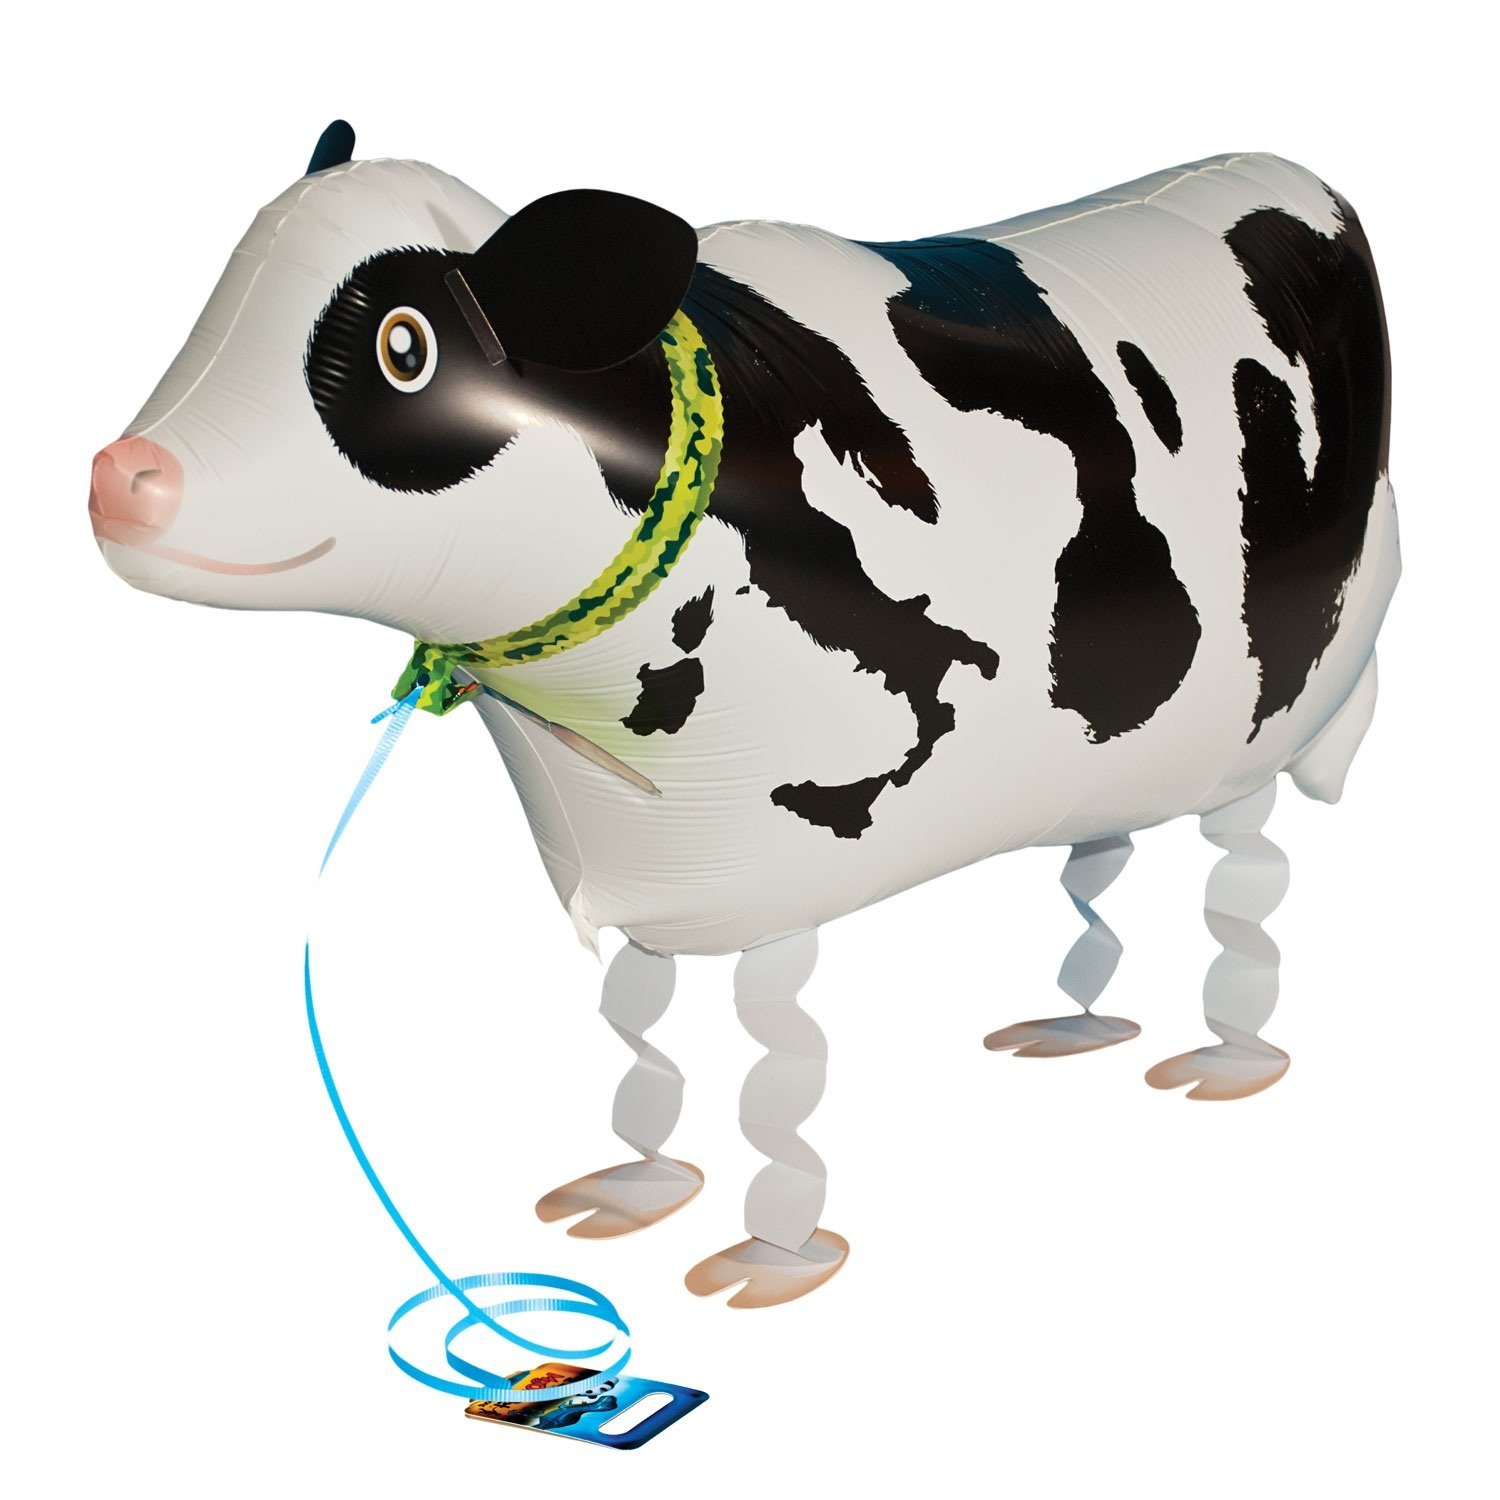 Amazon.com: My Own Pet Balloons Cow Farm Animal: Toys & Games